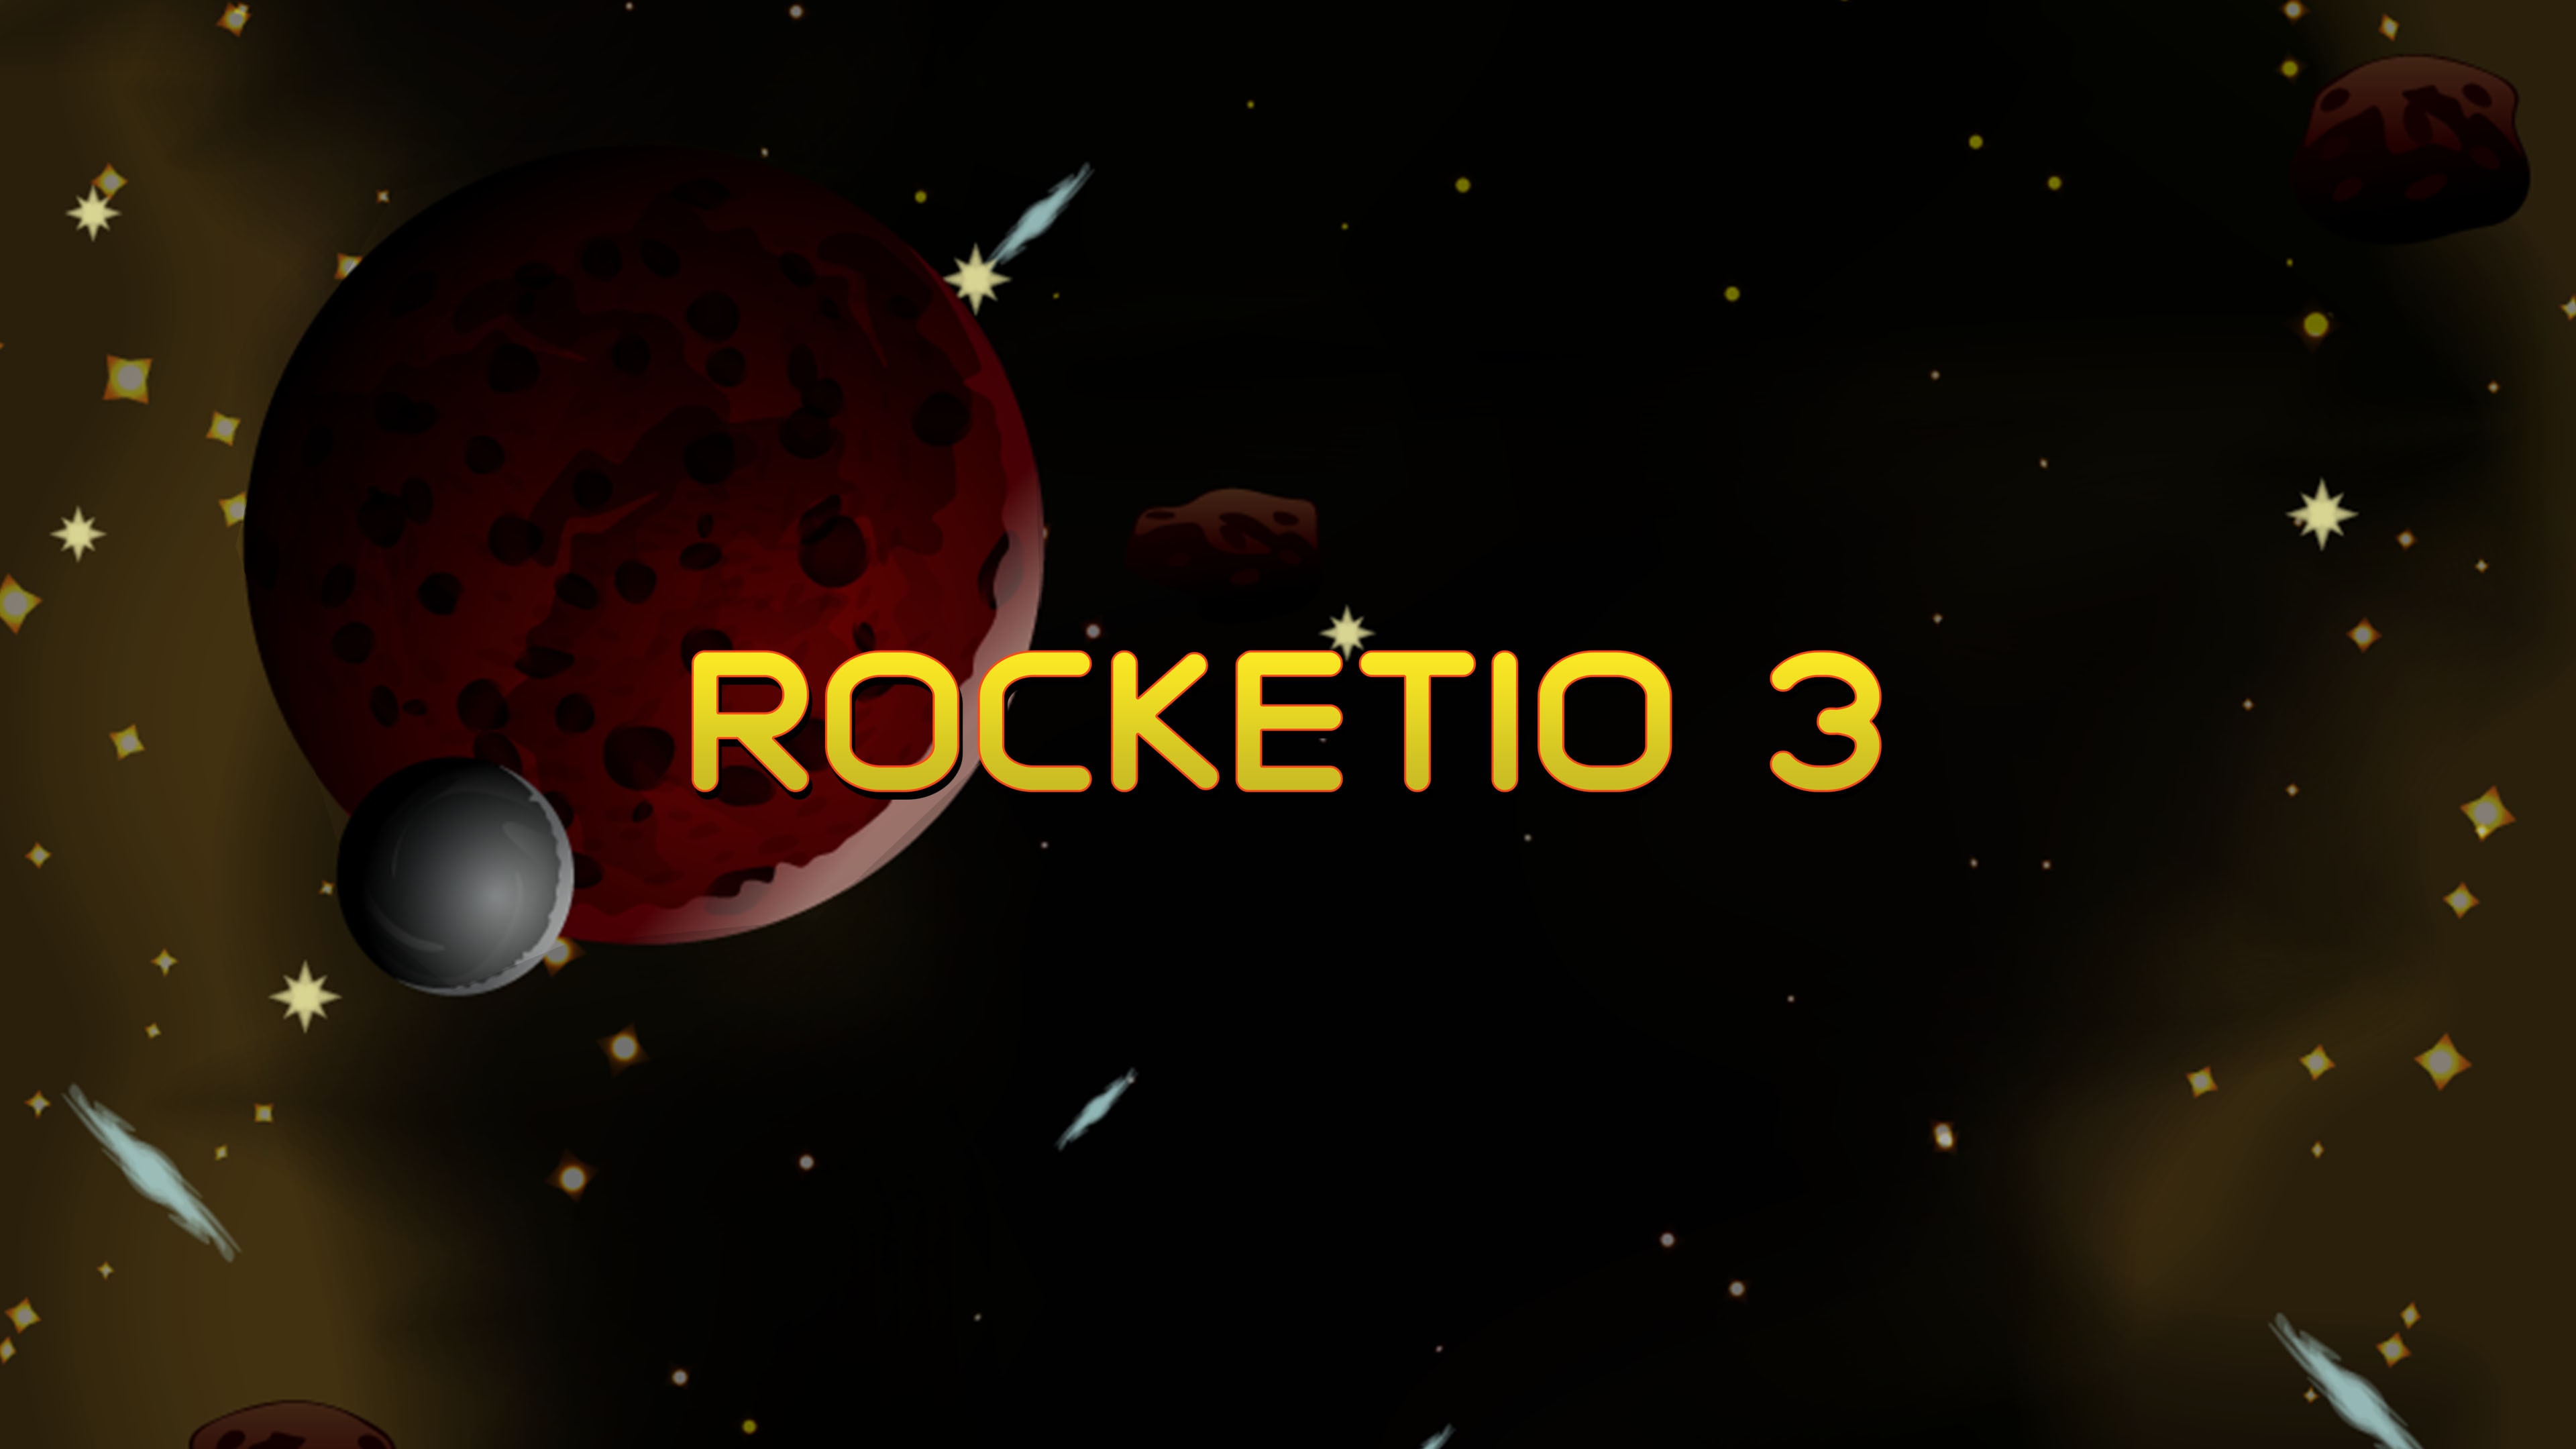 Rocketio 3